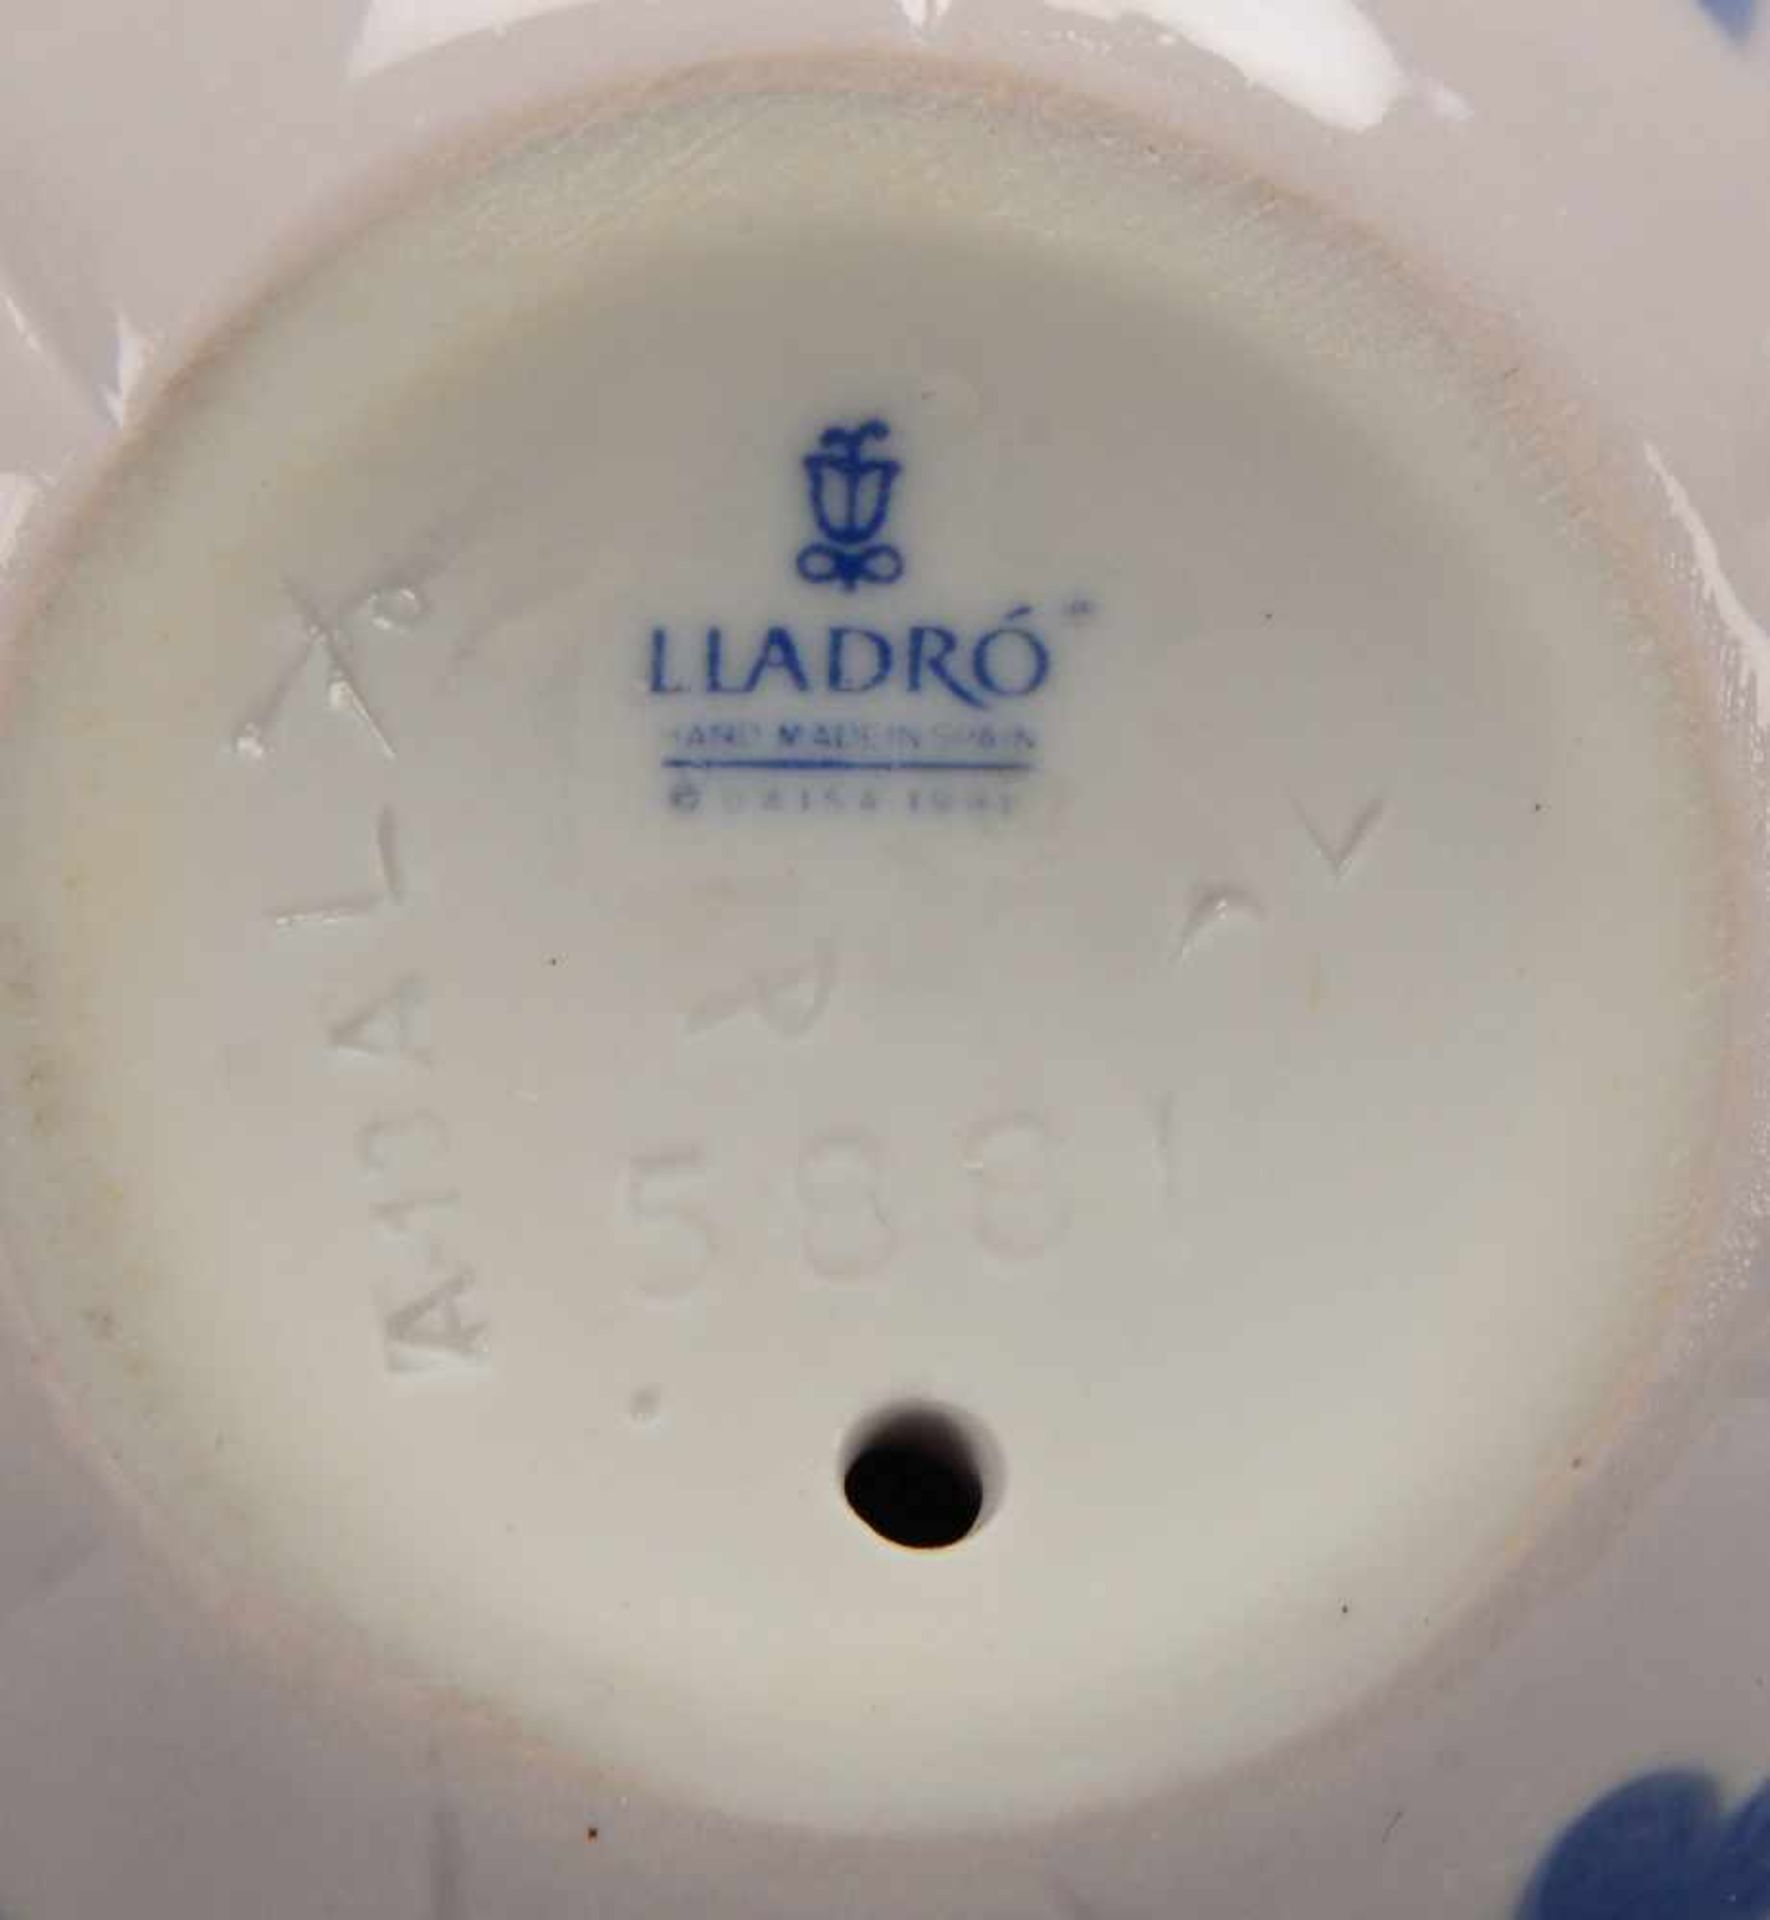 Lladro/Spanien, Porzellanfigur, 'Verträumtes Mäuschen', pastellige Unterglasurfarben, Figur in - Bild 2 aus 2